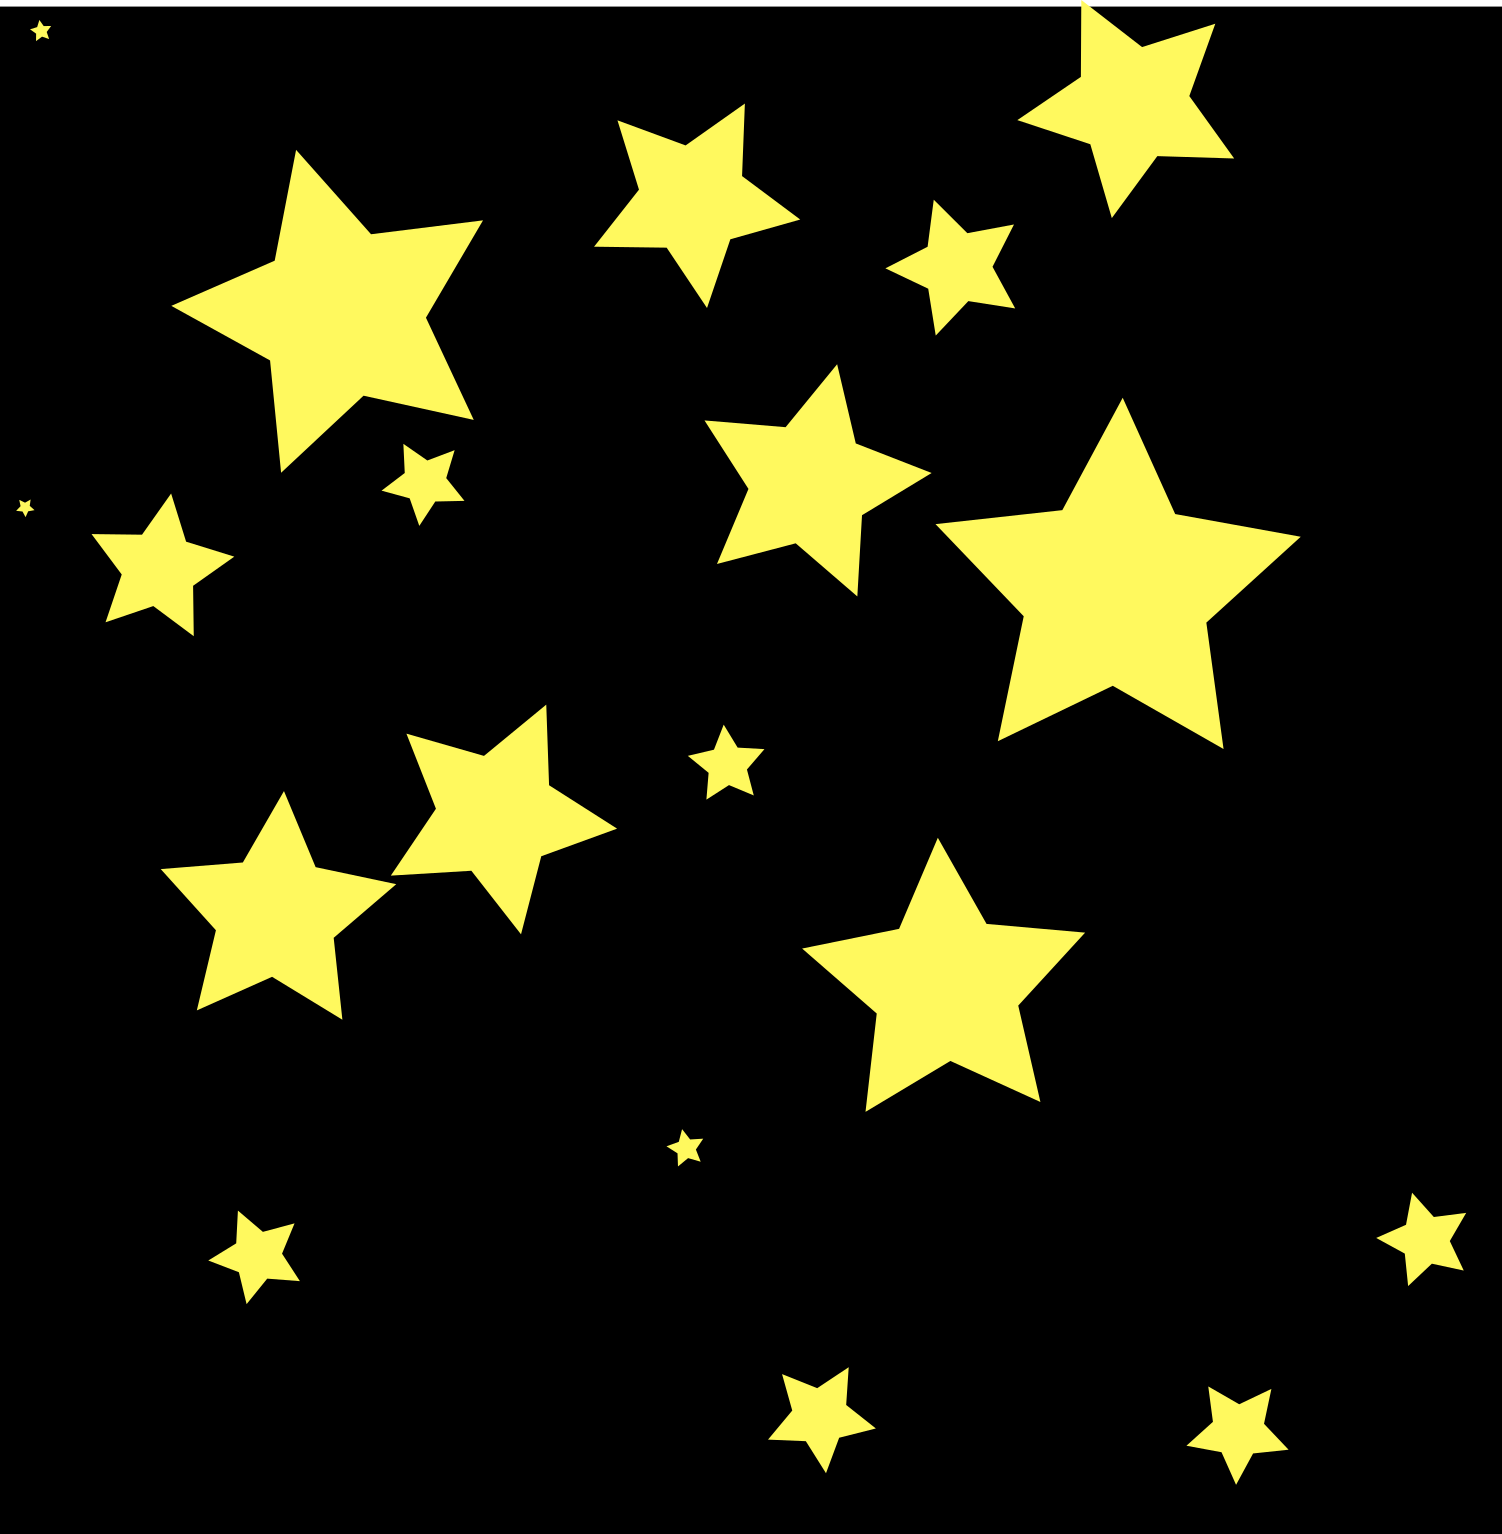 Abbildung von gelben Sternen auf einem schwarzen Untergrund